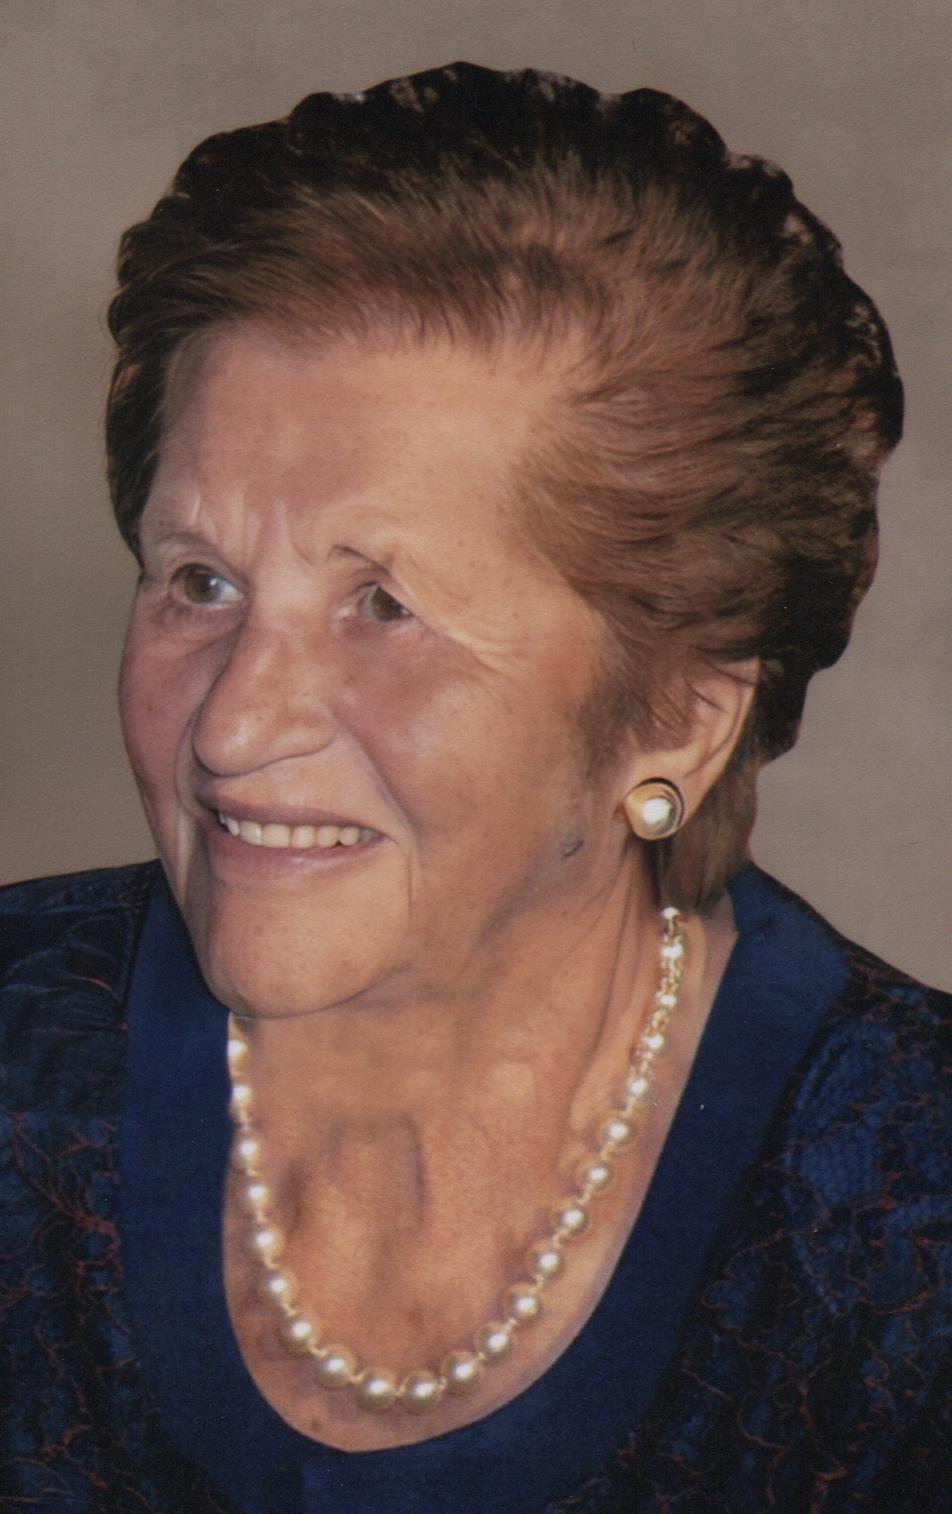 Έφυγε από την ζωή η Στεργιανή Γελαδάρα σε ηλικία 99 ετών- Η κηδεία θα τελεστεί τη Παρασκευή 23  Σεπτεμβρίου